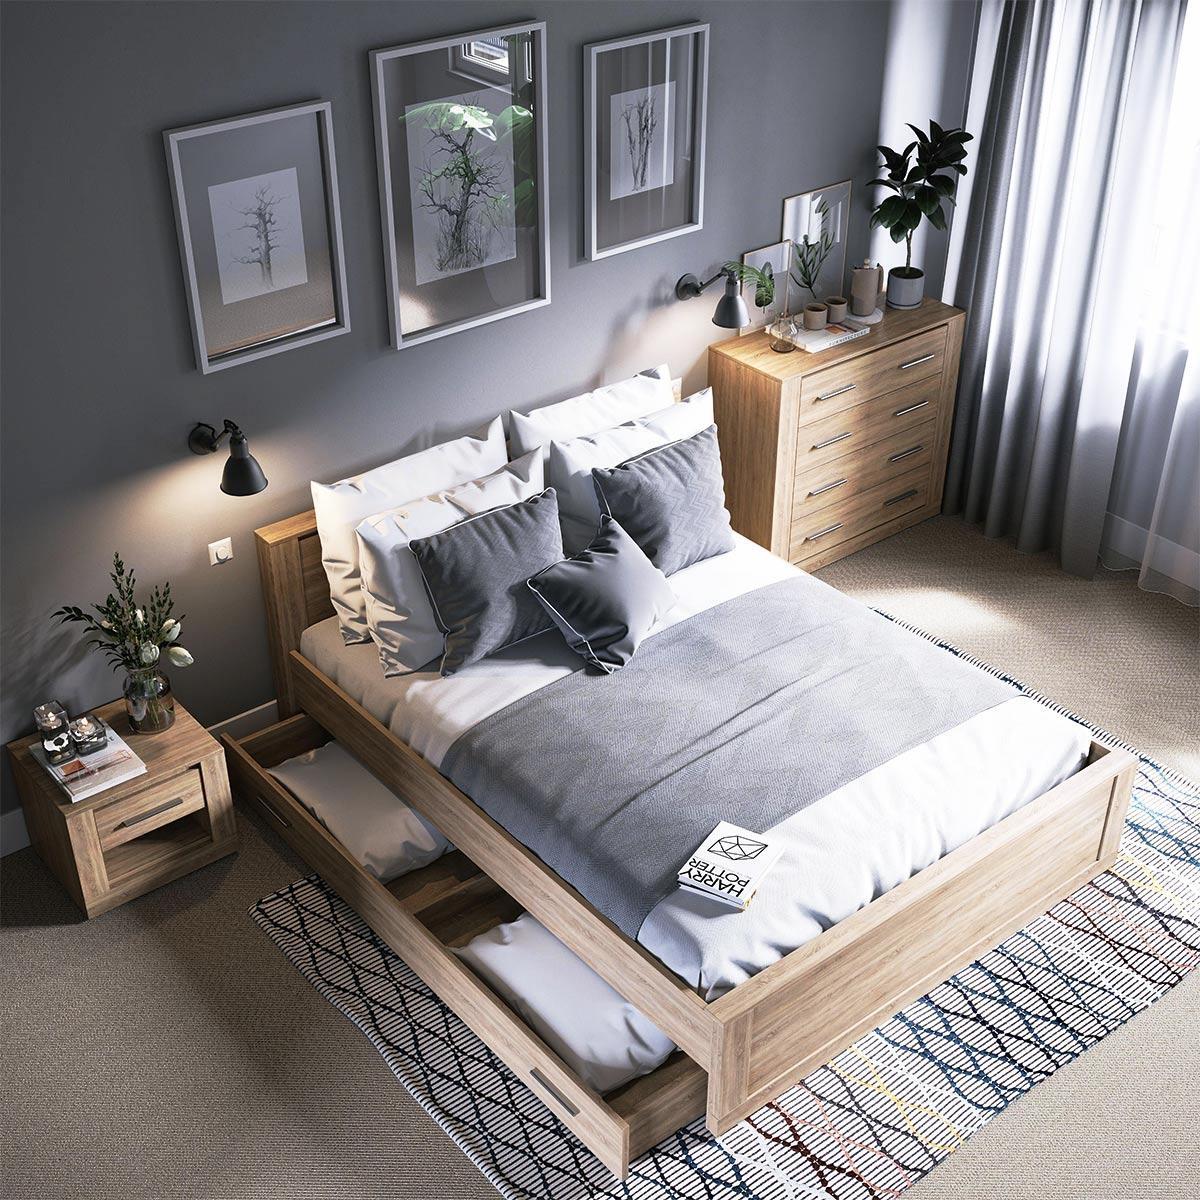 Giường gỗ công nghiệp là lựa chọn phổ biến cho nhiều phòng ngủ nhà cấp 4